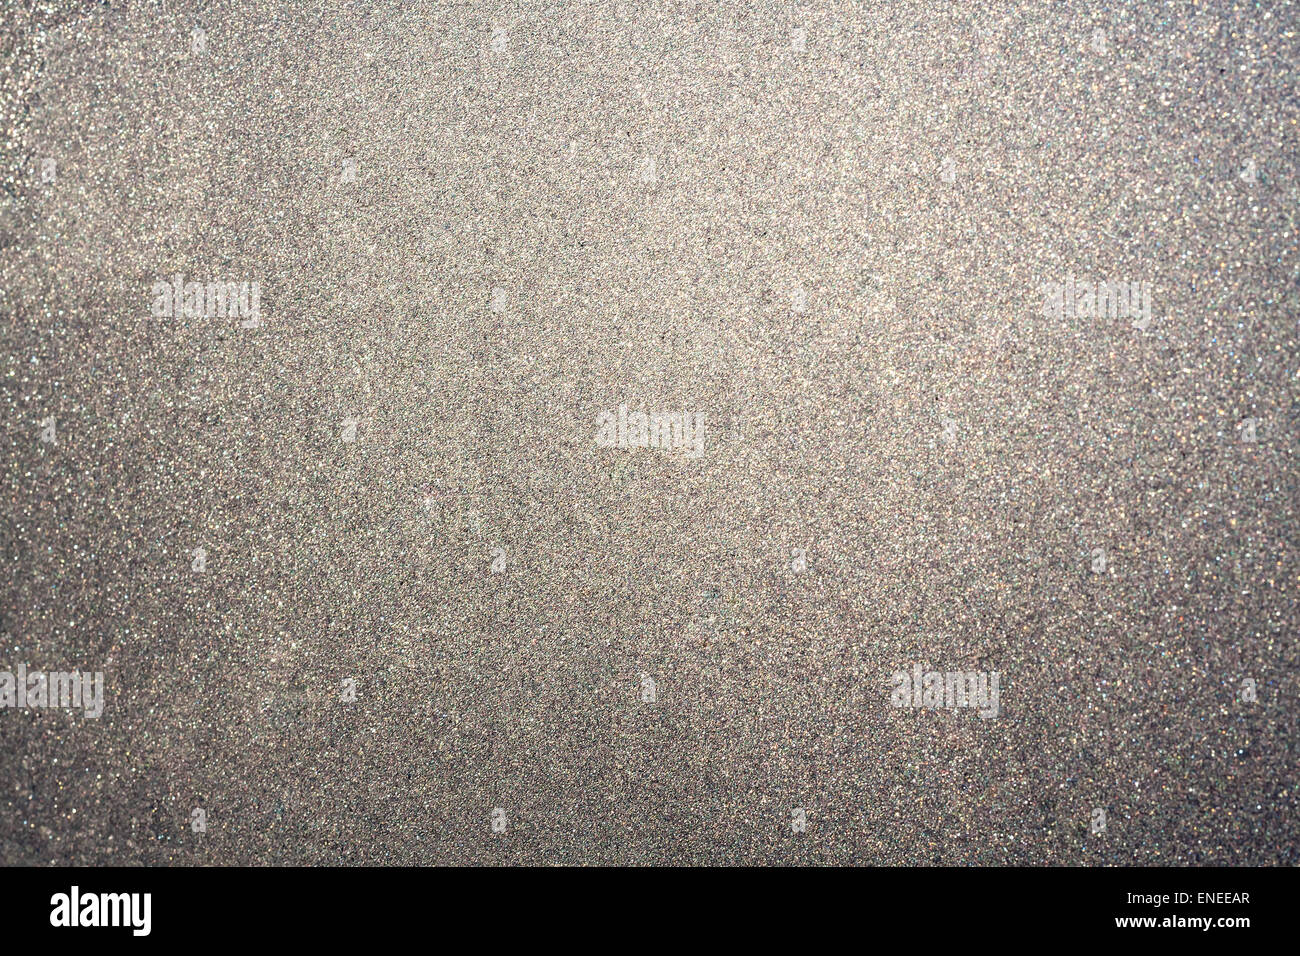 Colore grigio argento immagini e fotografie stock ad alta risoluzione -  Alamy